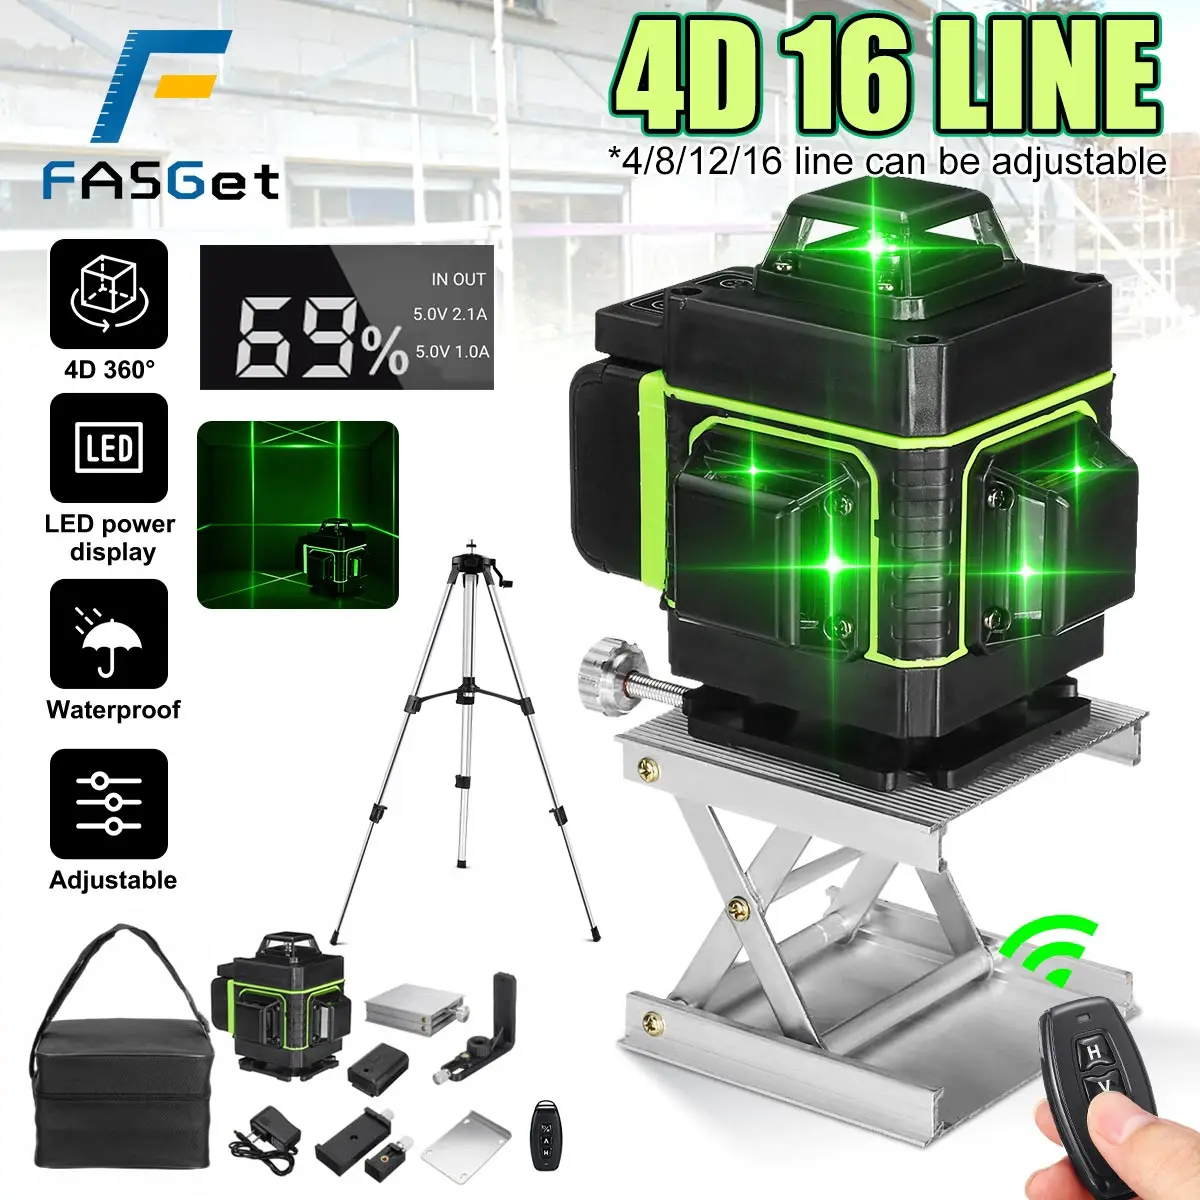 FASGet 4D 16 линий, зеленые лазерные уровни, 360 горизонтальных и вертикальных перекрестных линий с автоматическим самовыравниванием, супер мощный лазерный луч